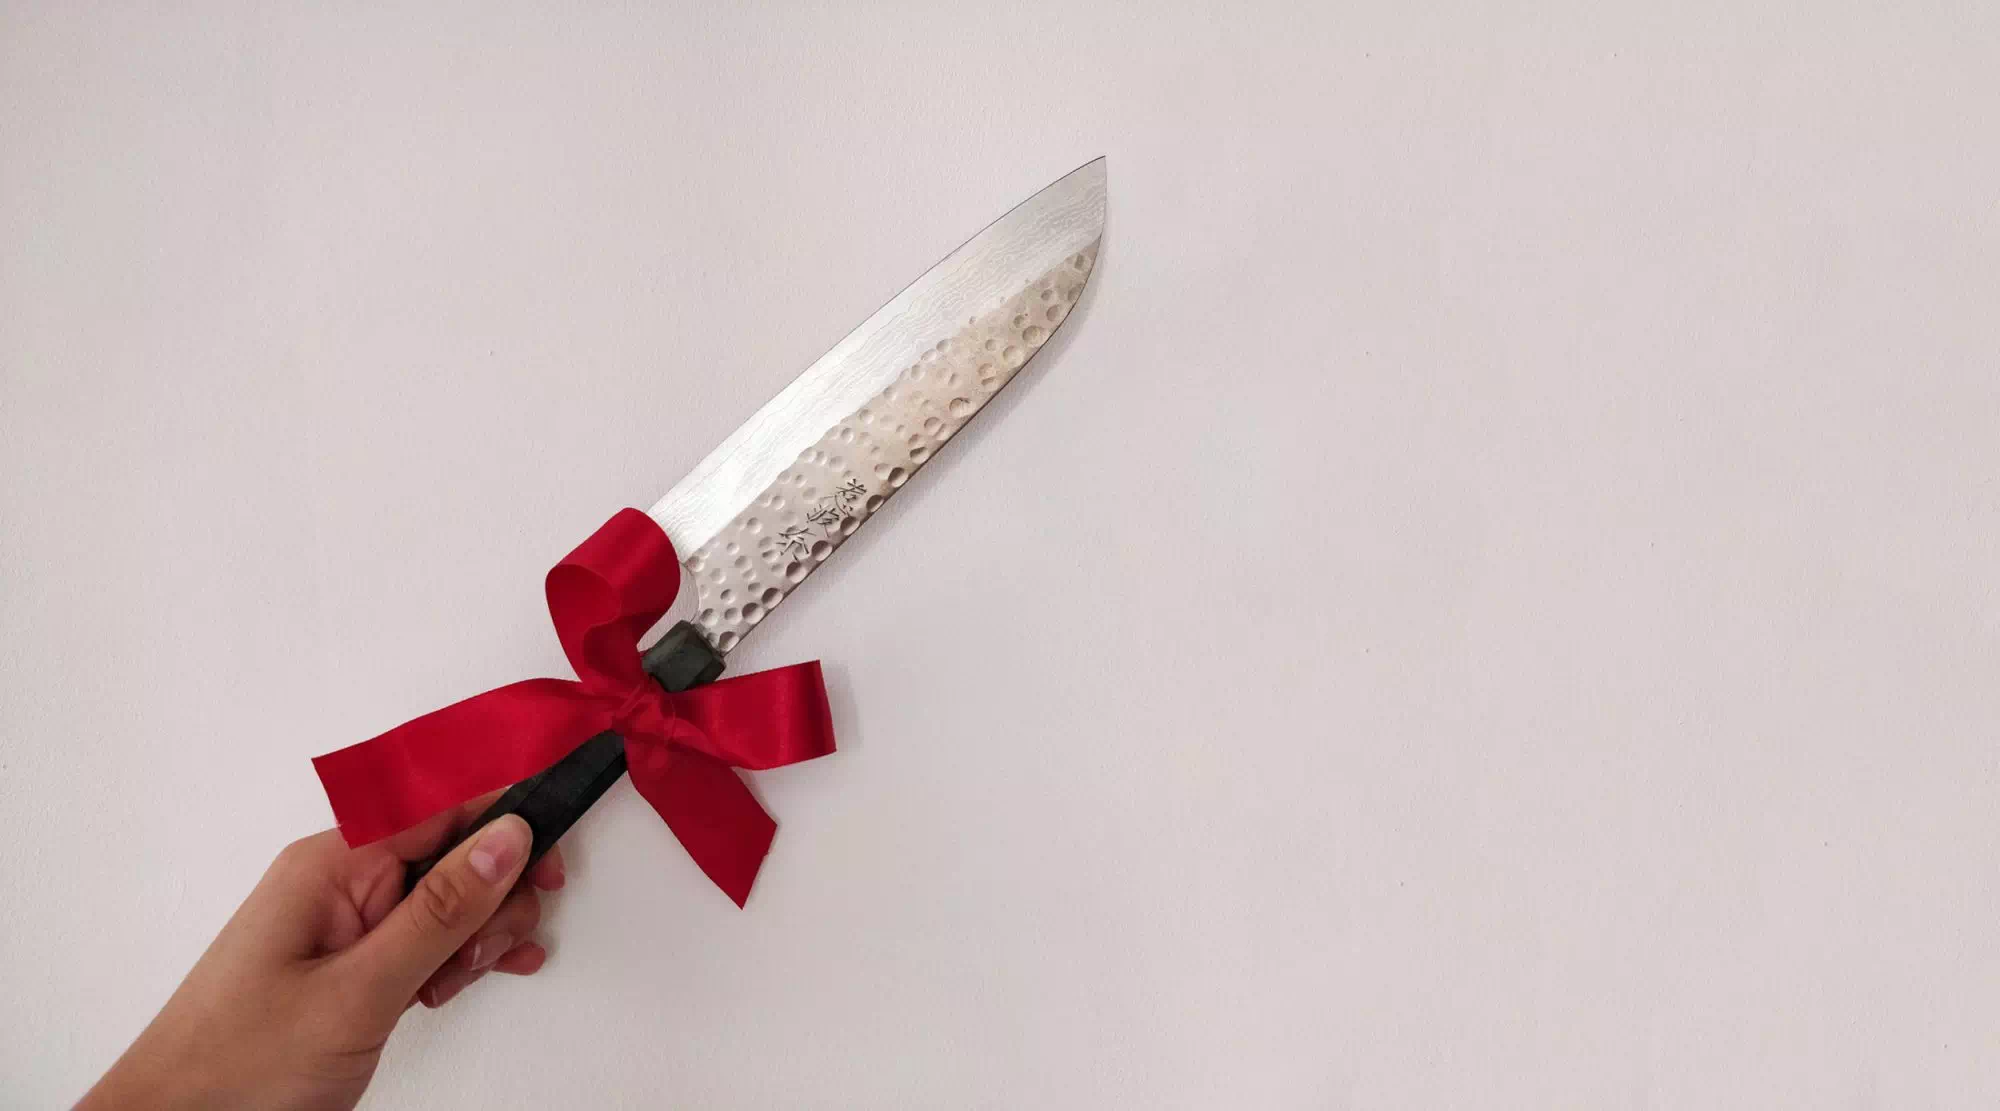 Можно ли дарить ножи в подарок?